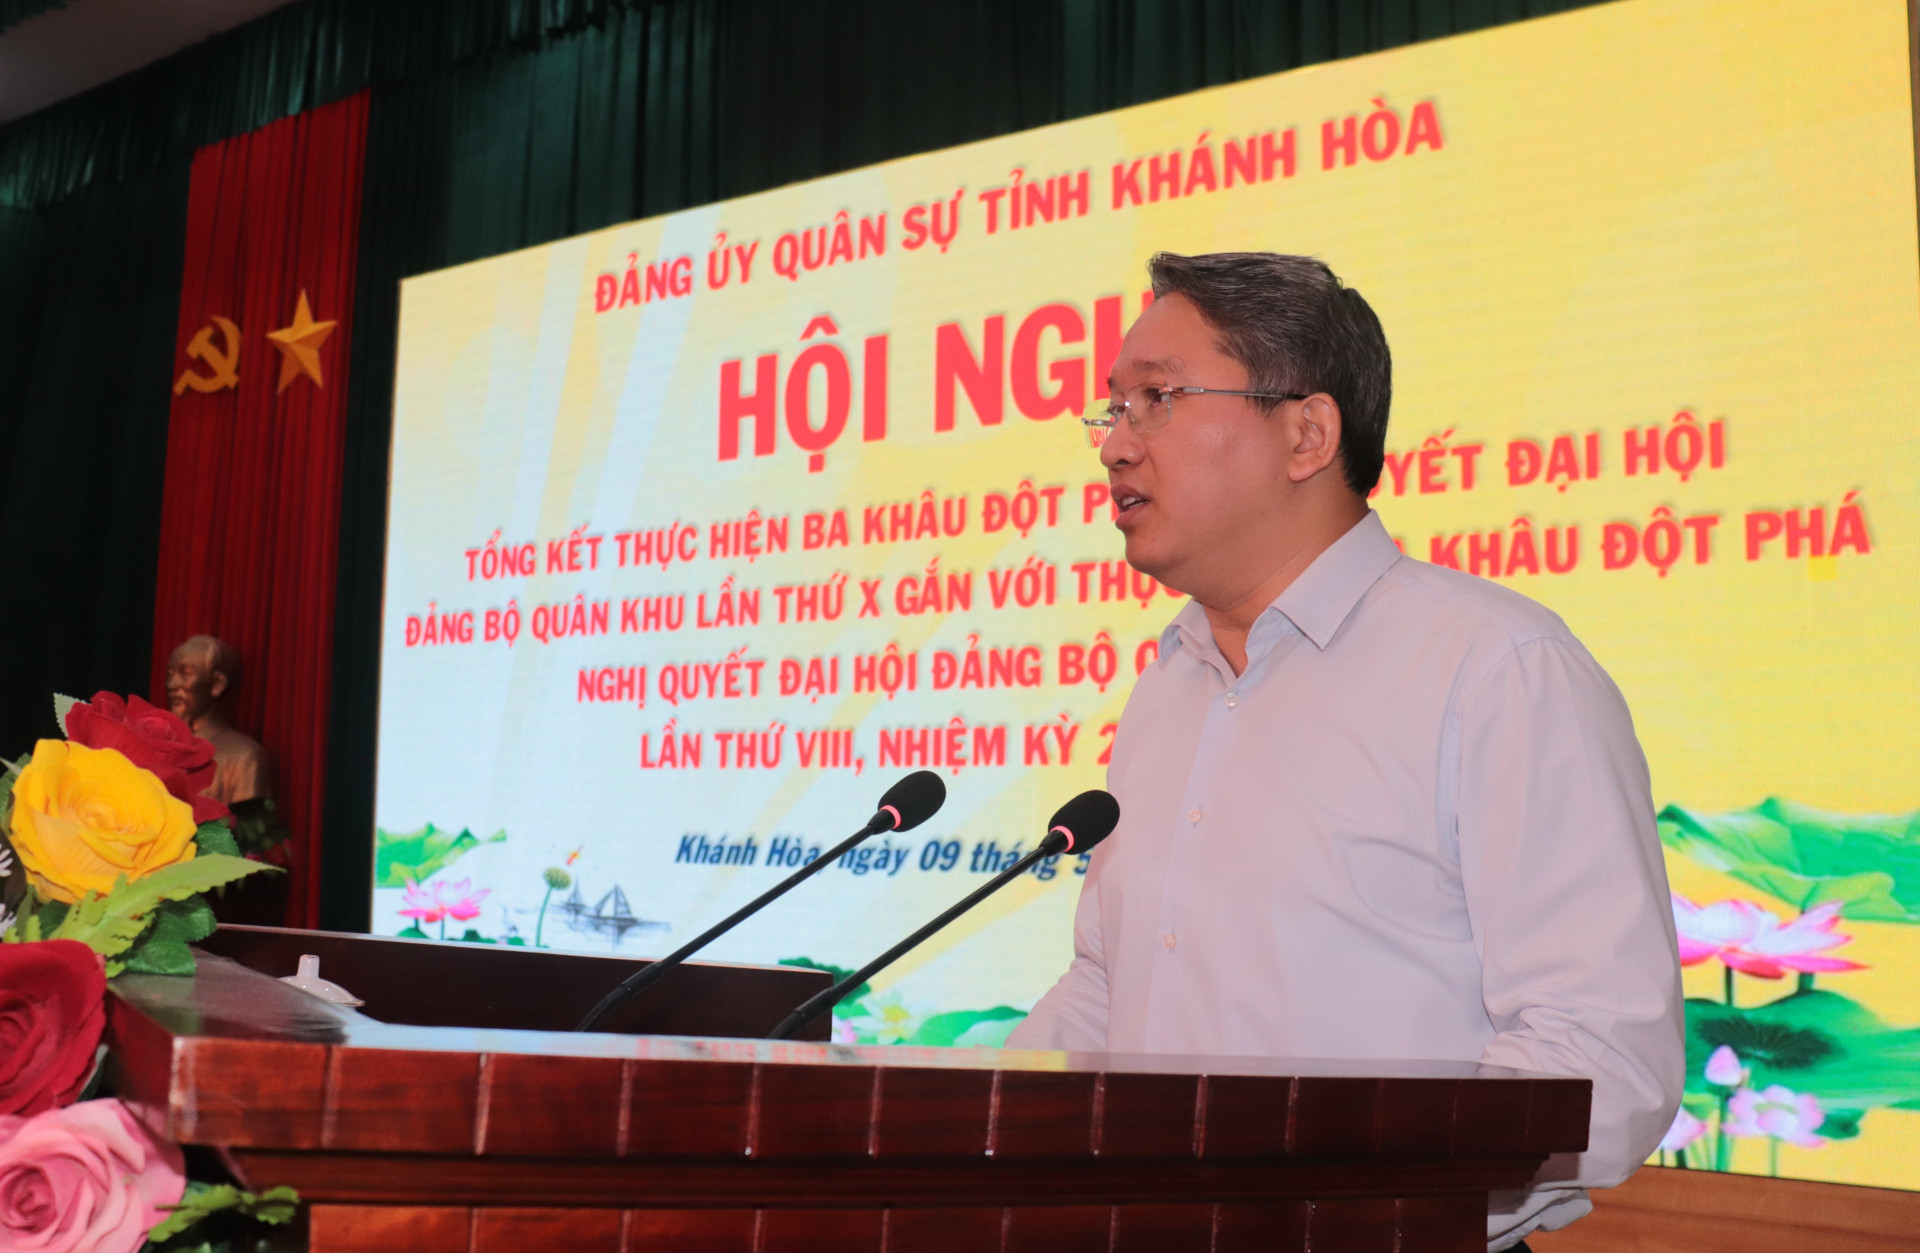 Đồng chí Nguyễn Hải Ninh phát biểu kết luận hội nghị.